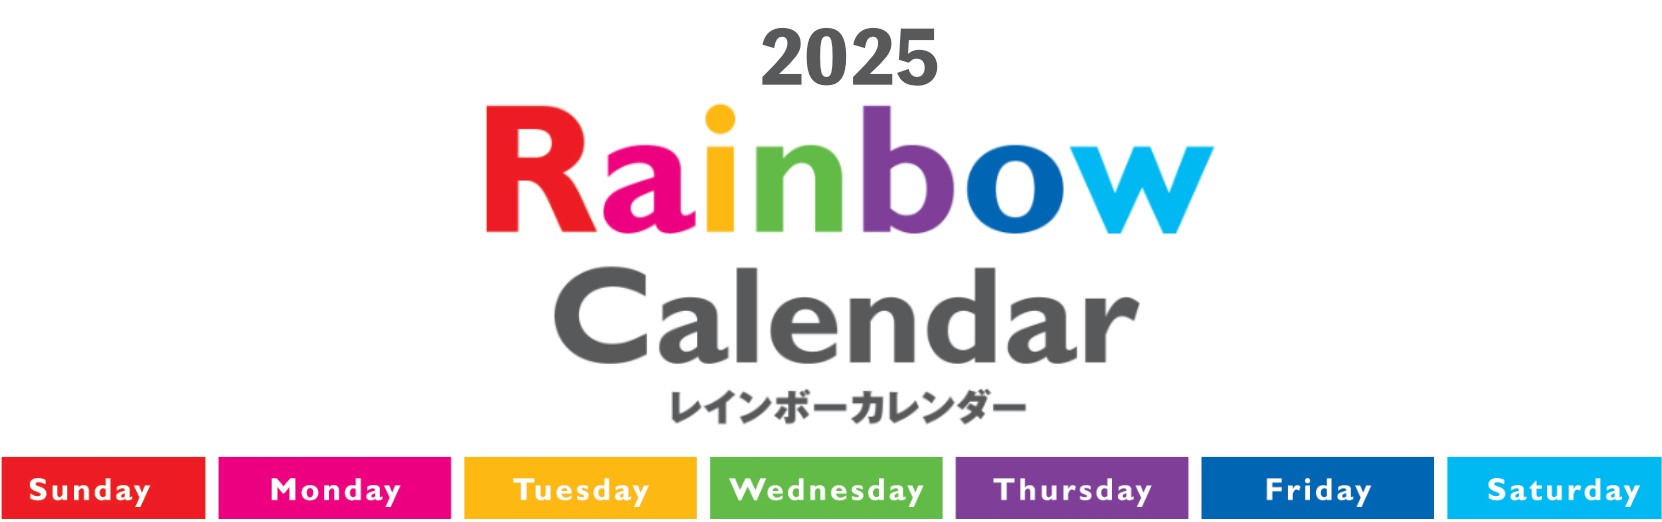 レインボーカレンダー 2025年カレンダー